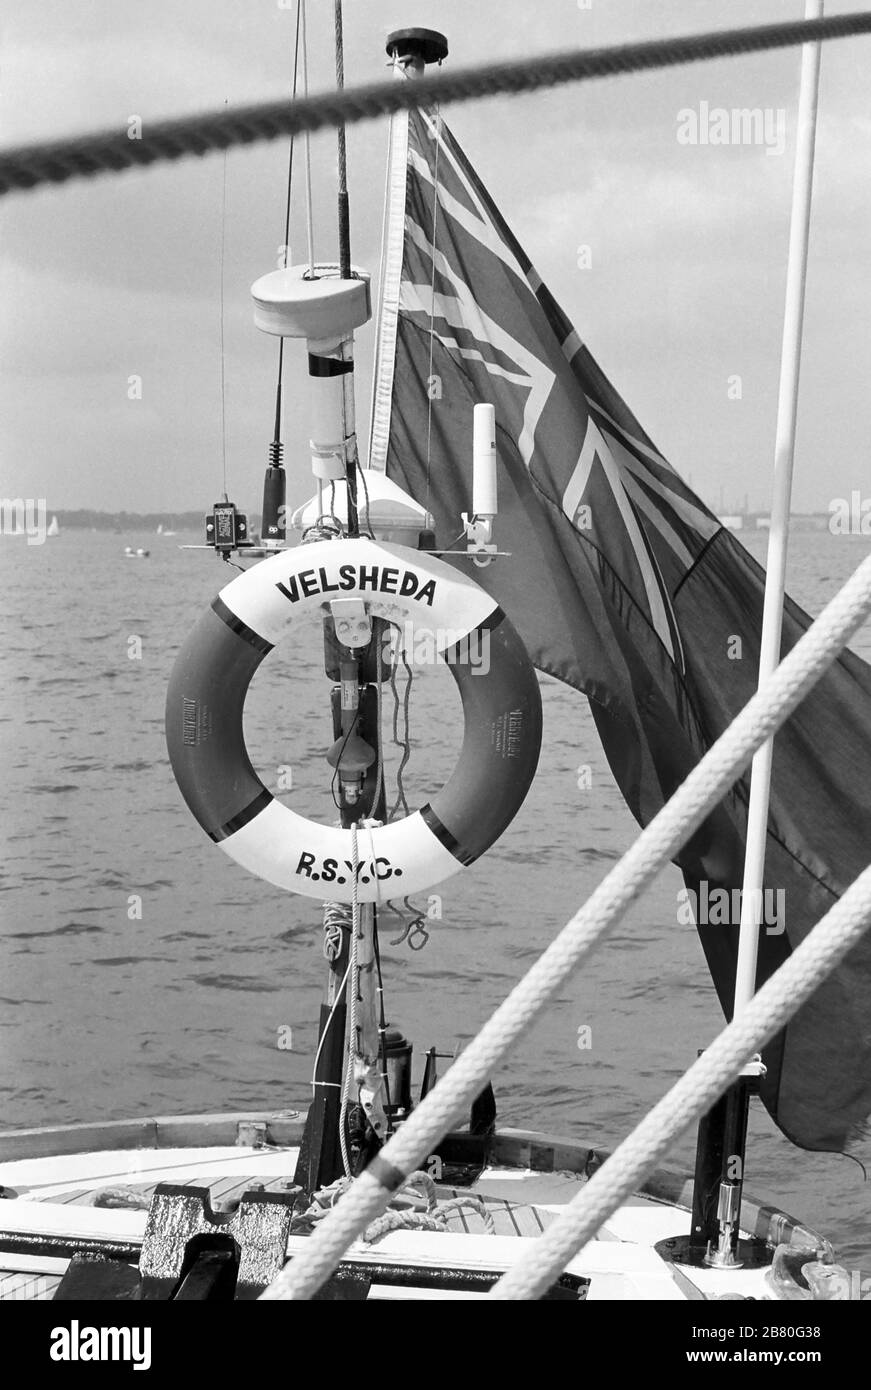 En regardant à l'arrière du poste de pilotage à bord du yacht J Class 'Velsheda' (K 7), en naviguant dans une légère brise sur le Solent après le premier refrain, été 1991. Archiver la photographie de film noir et blanc Banque D'Images